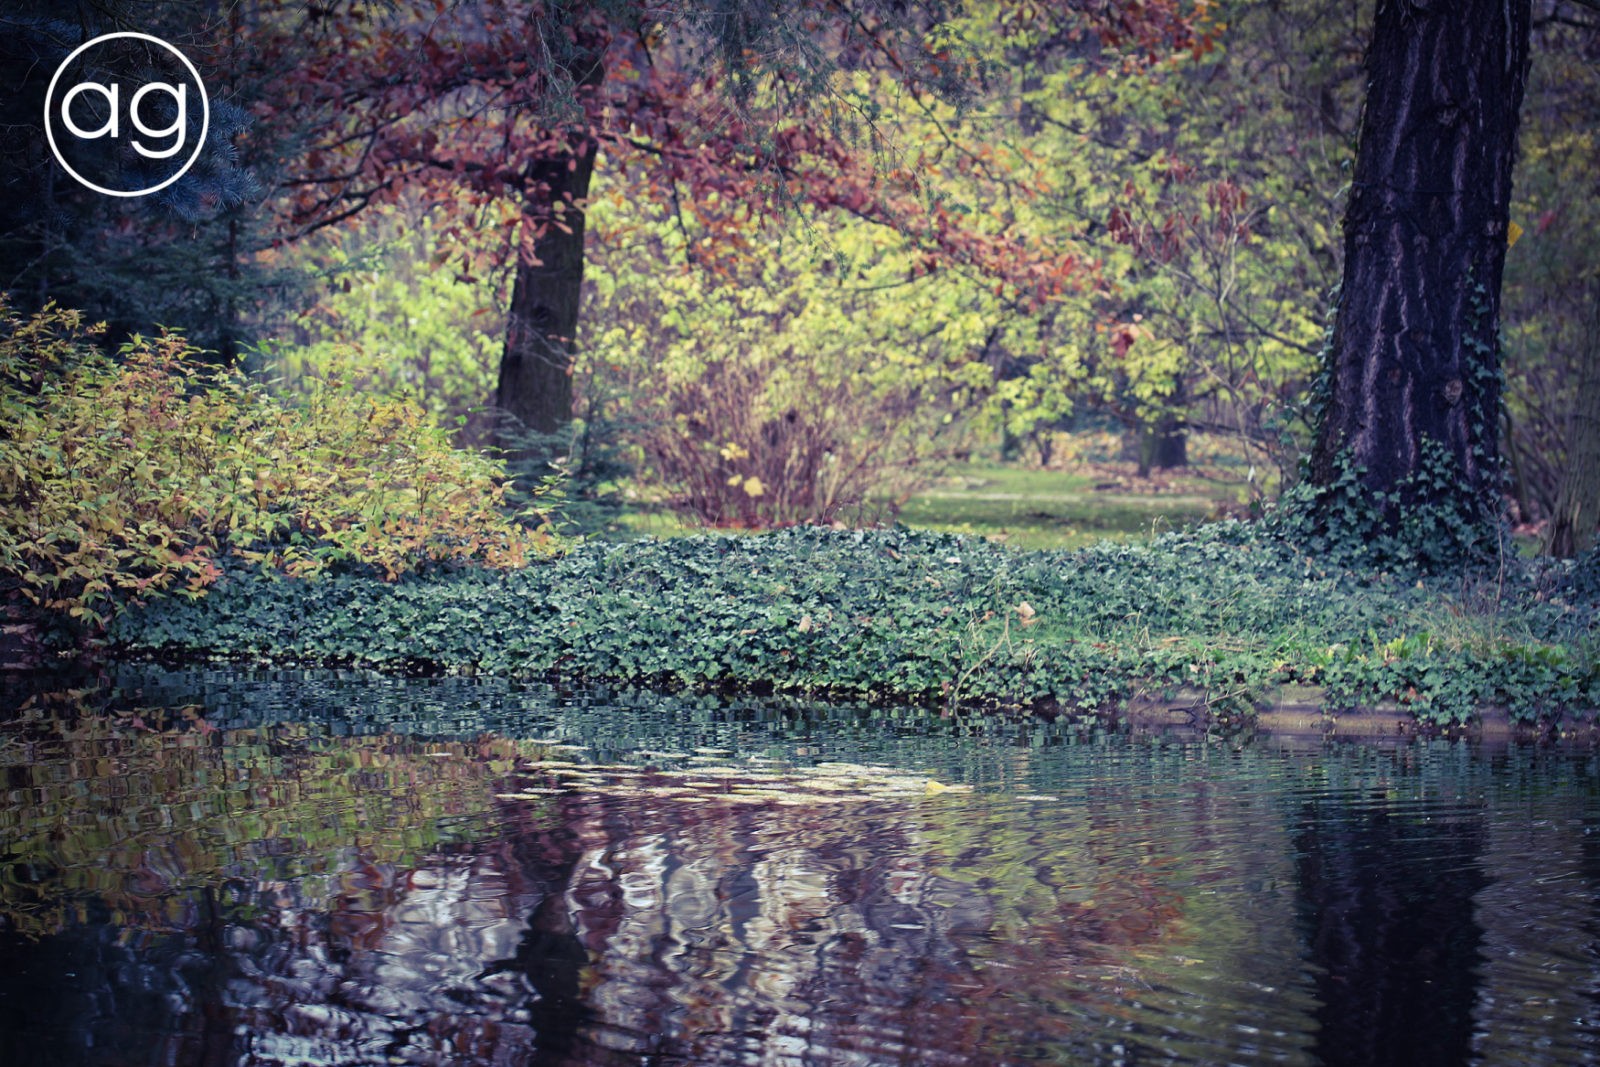 jesienny spacer, kolorowa listopada połowa, ogród botaniczny, Poznań, agnieszkagertnerblog, Agnieszka Gertner, jesień, architektura krajobrazu